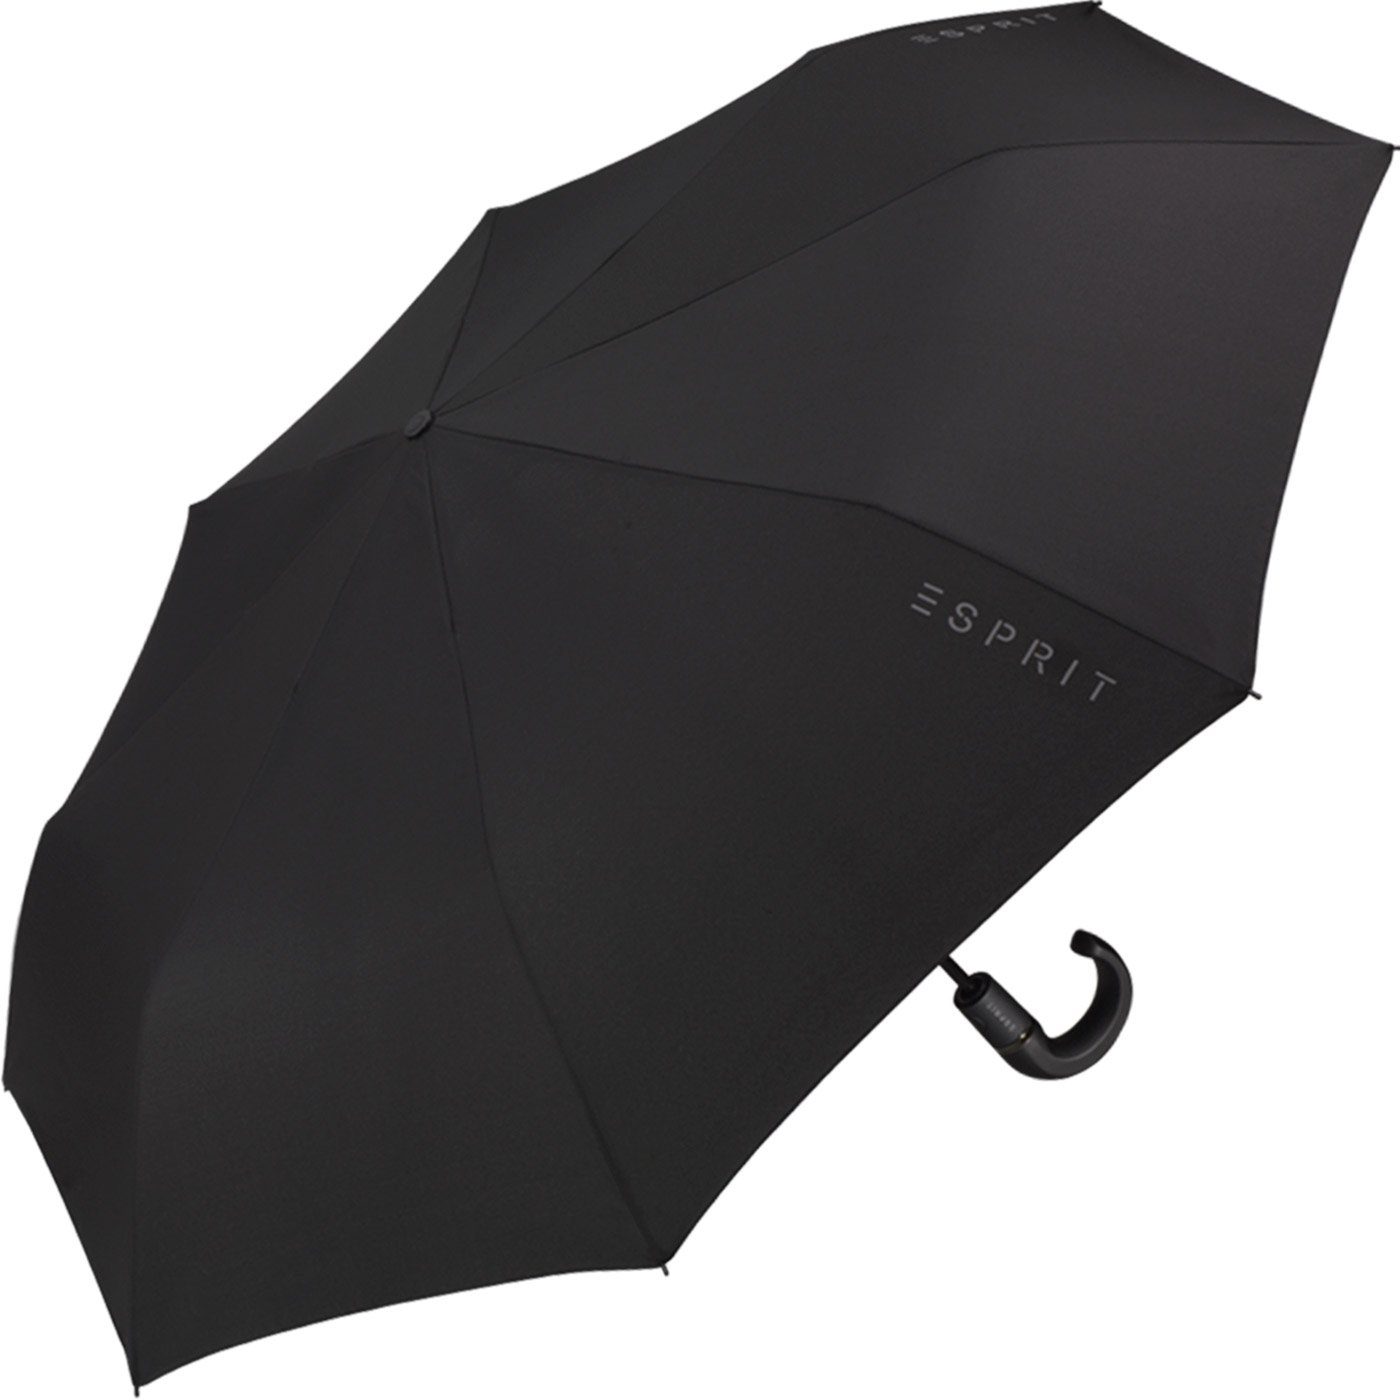 Gents, mit Esprit - Taschenregenschirm Rundhakengriff und Easymatic praktisch stabil Herren-Schirm